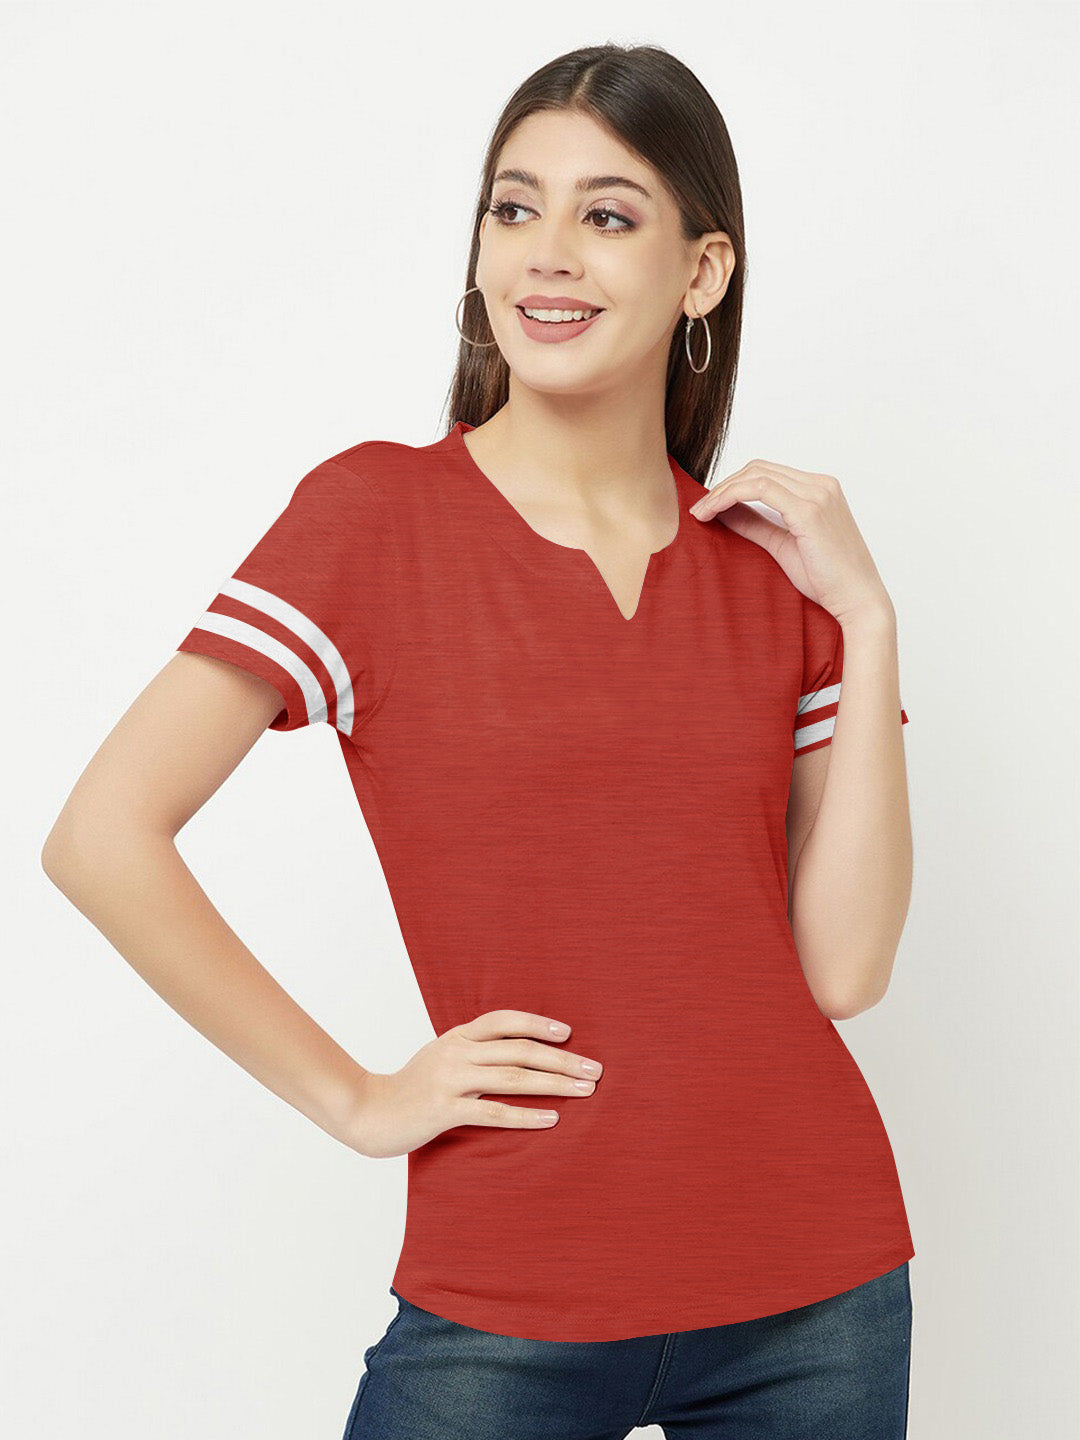 Majestic V Neck Half Sleeve Tee Shirt For Ladies-Red Melange-SP1978